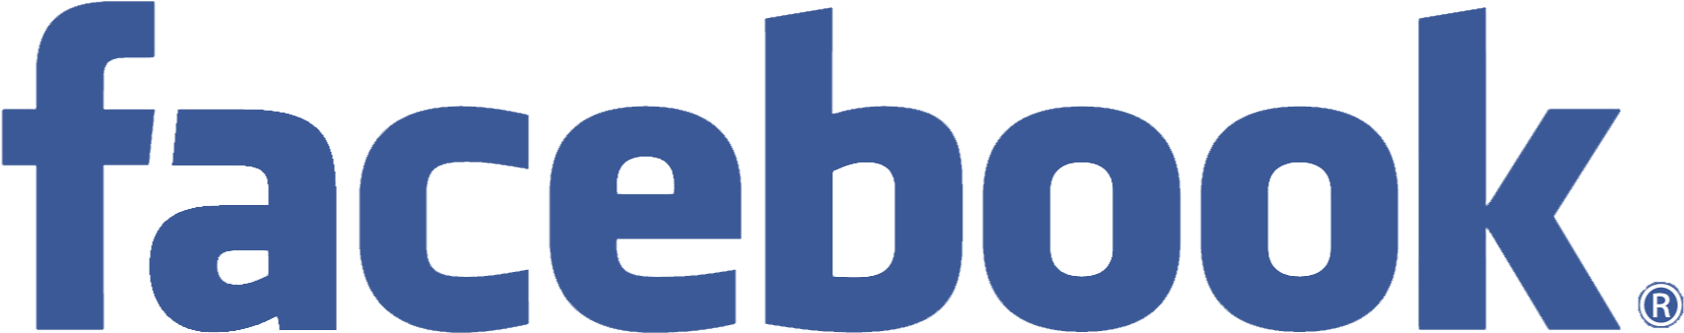 Facebook Logo Png - 2018 Facebook Logo Png (1722x362), Png Download